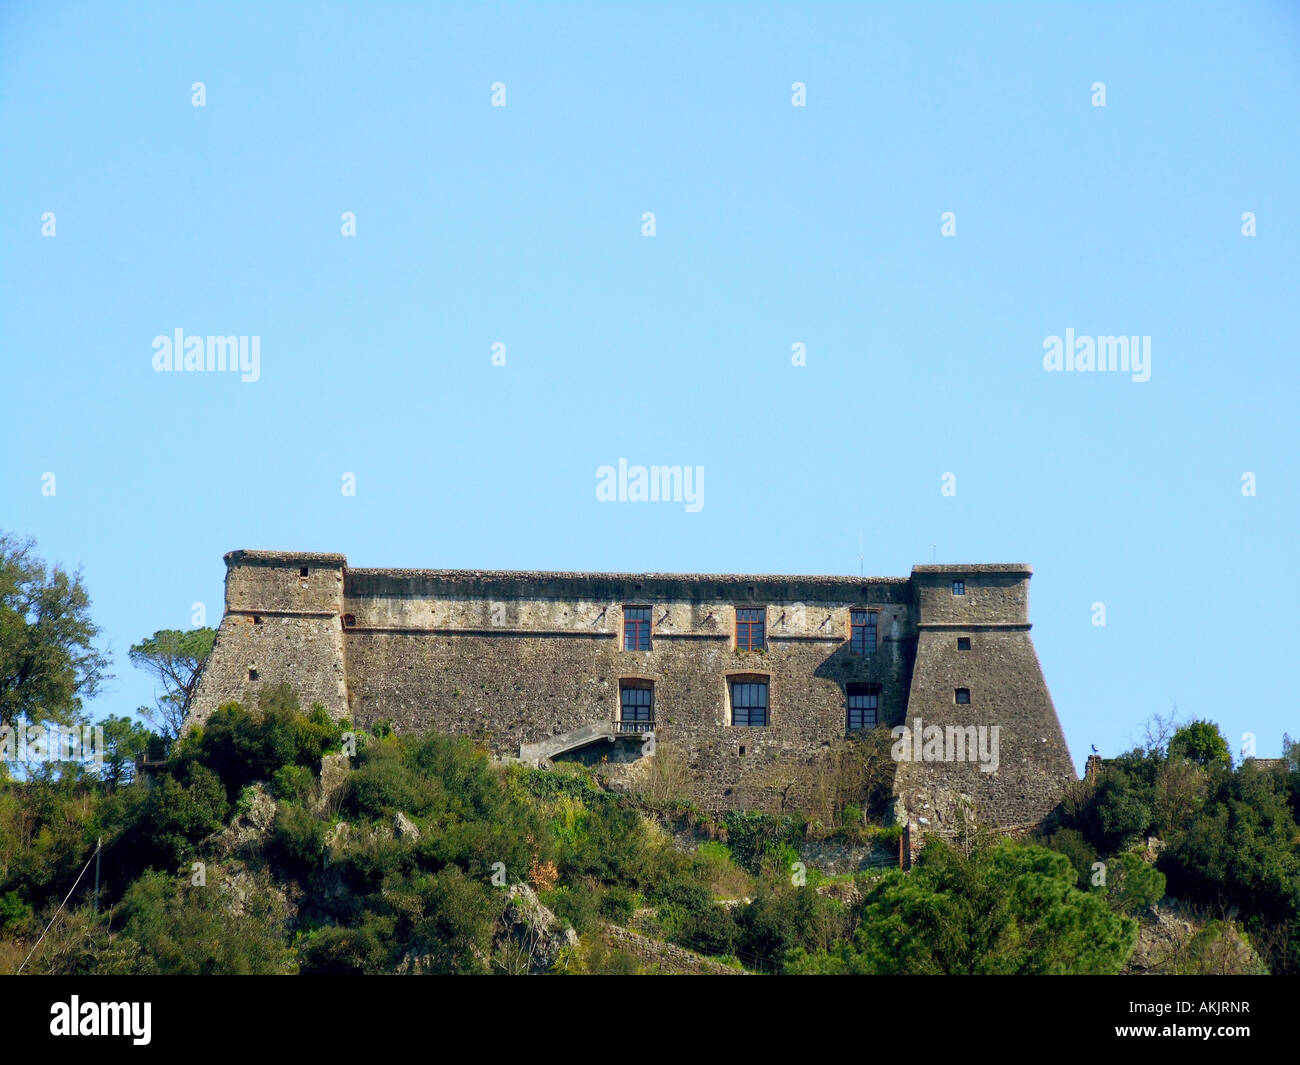 Brunella castle, Aulla, Tuscany, Italy Stock Photo